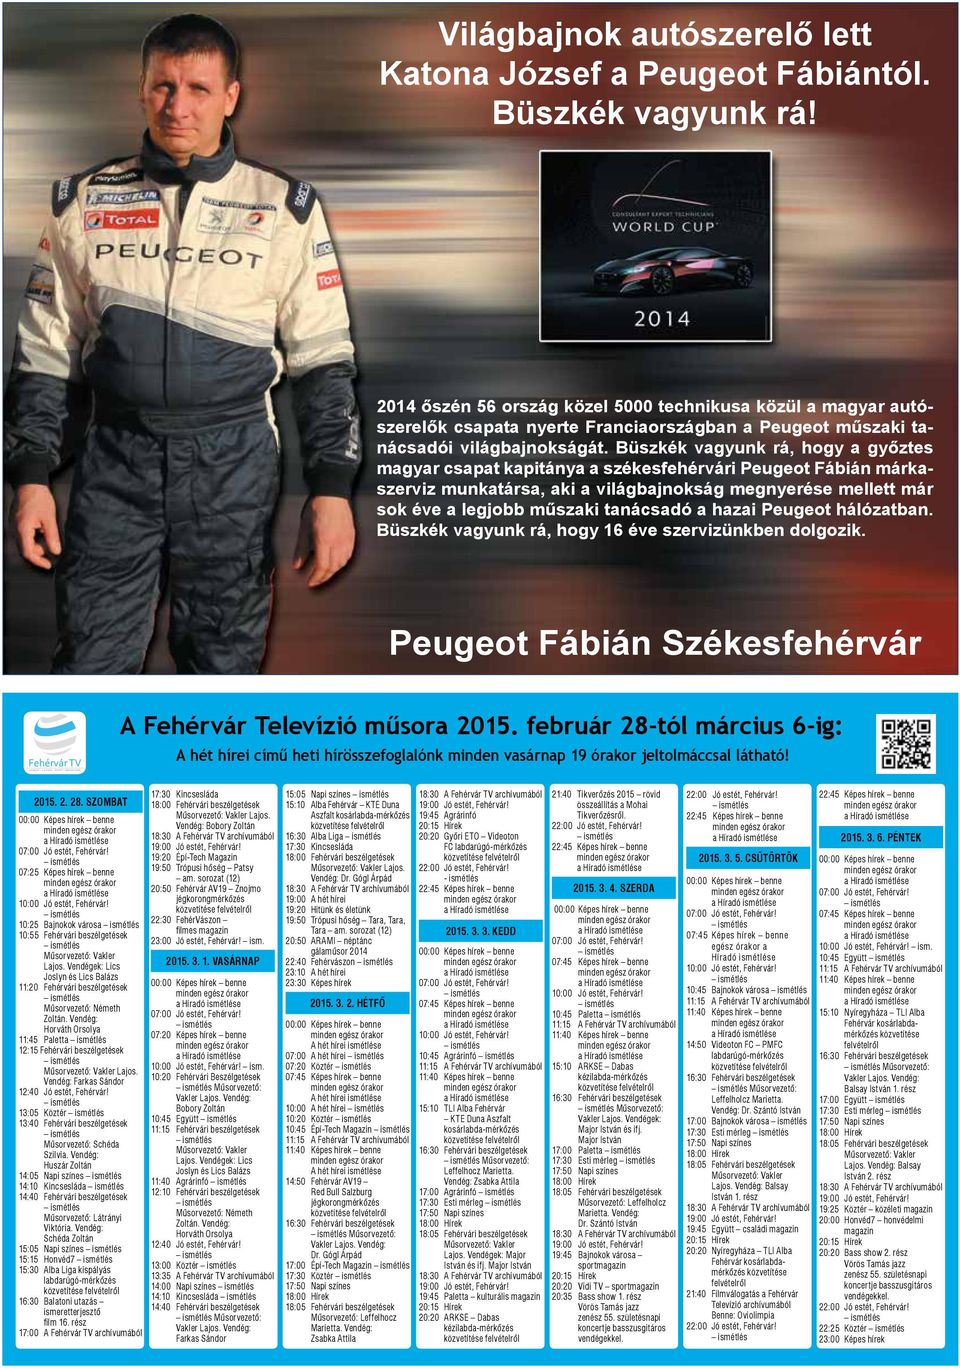 Büszkék vagyunk rá, hogy a győztes magyar csapat kapitánya a székesfehérvári Peugeot Fábián márkaszerviz munkatársa, aki a világbajnokság megnyerése mellett már sok éve a legjobb műszaki tanácsadó a